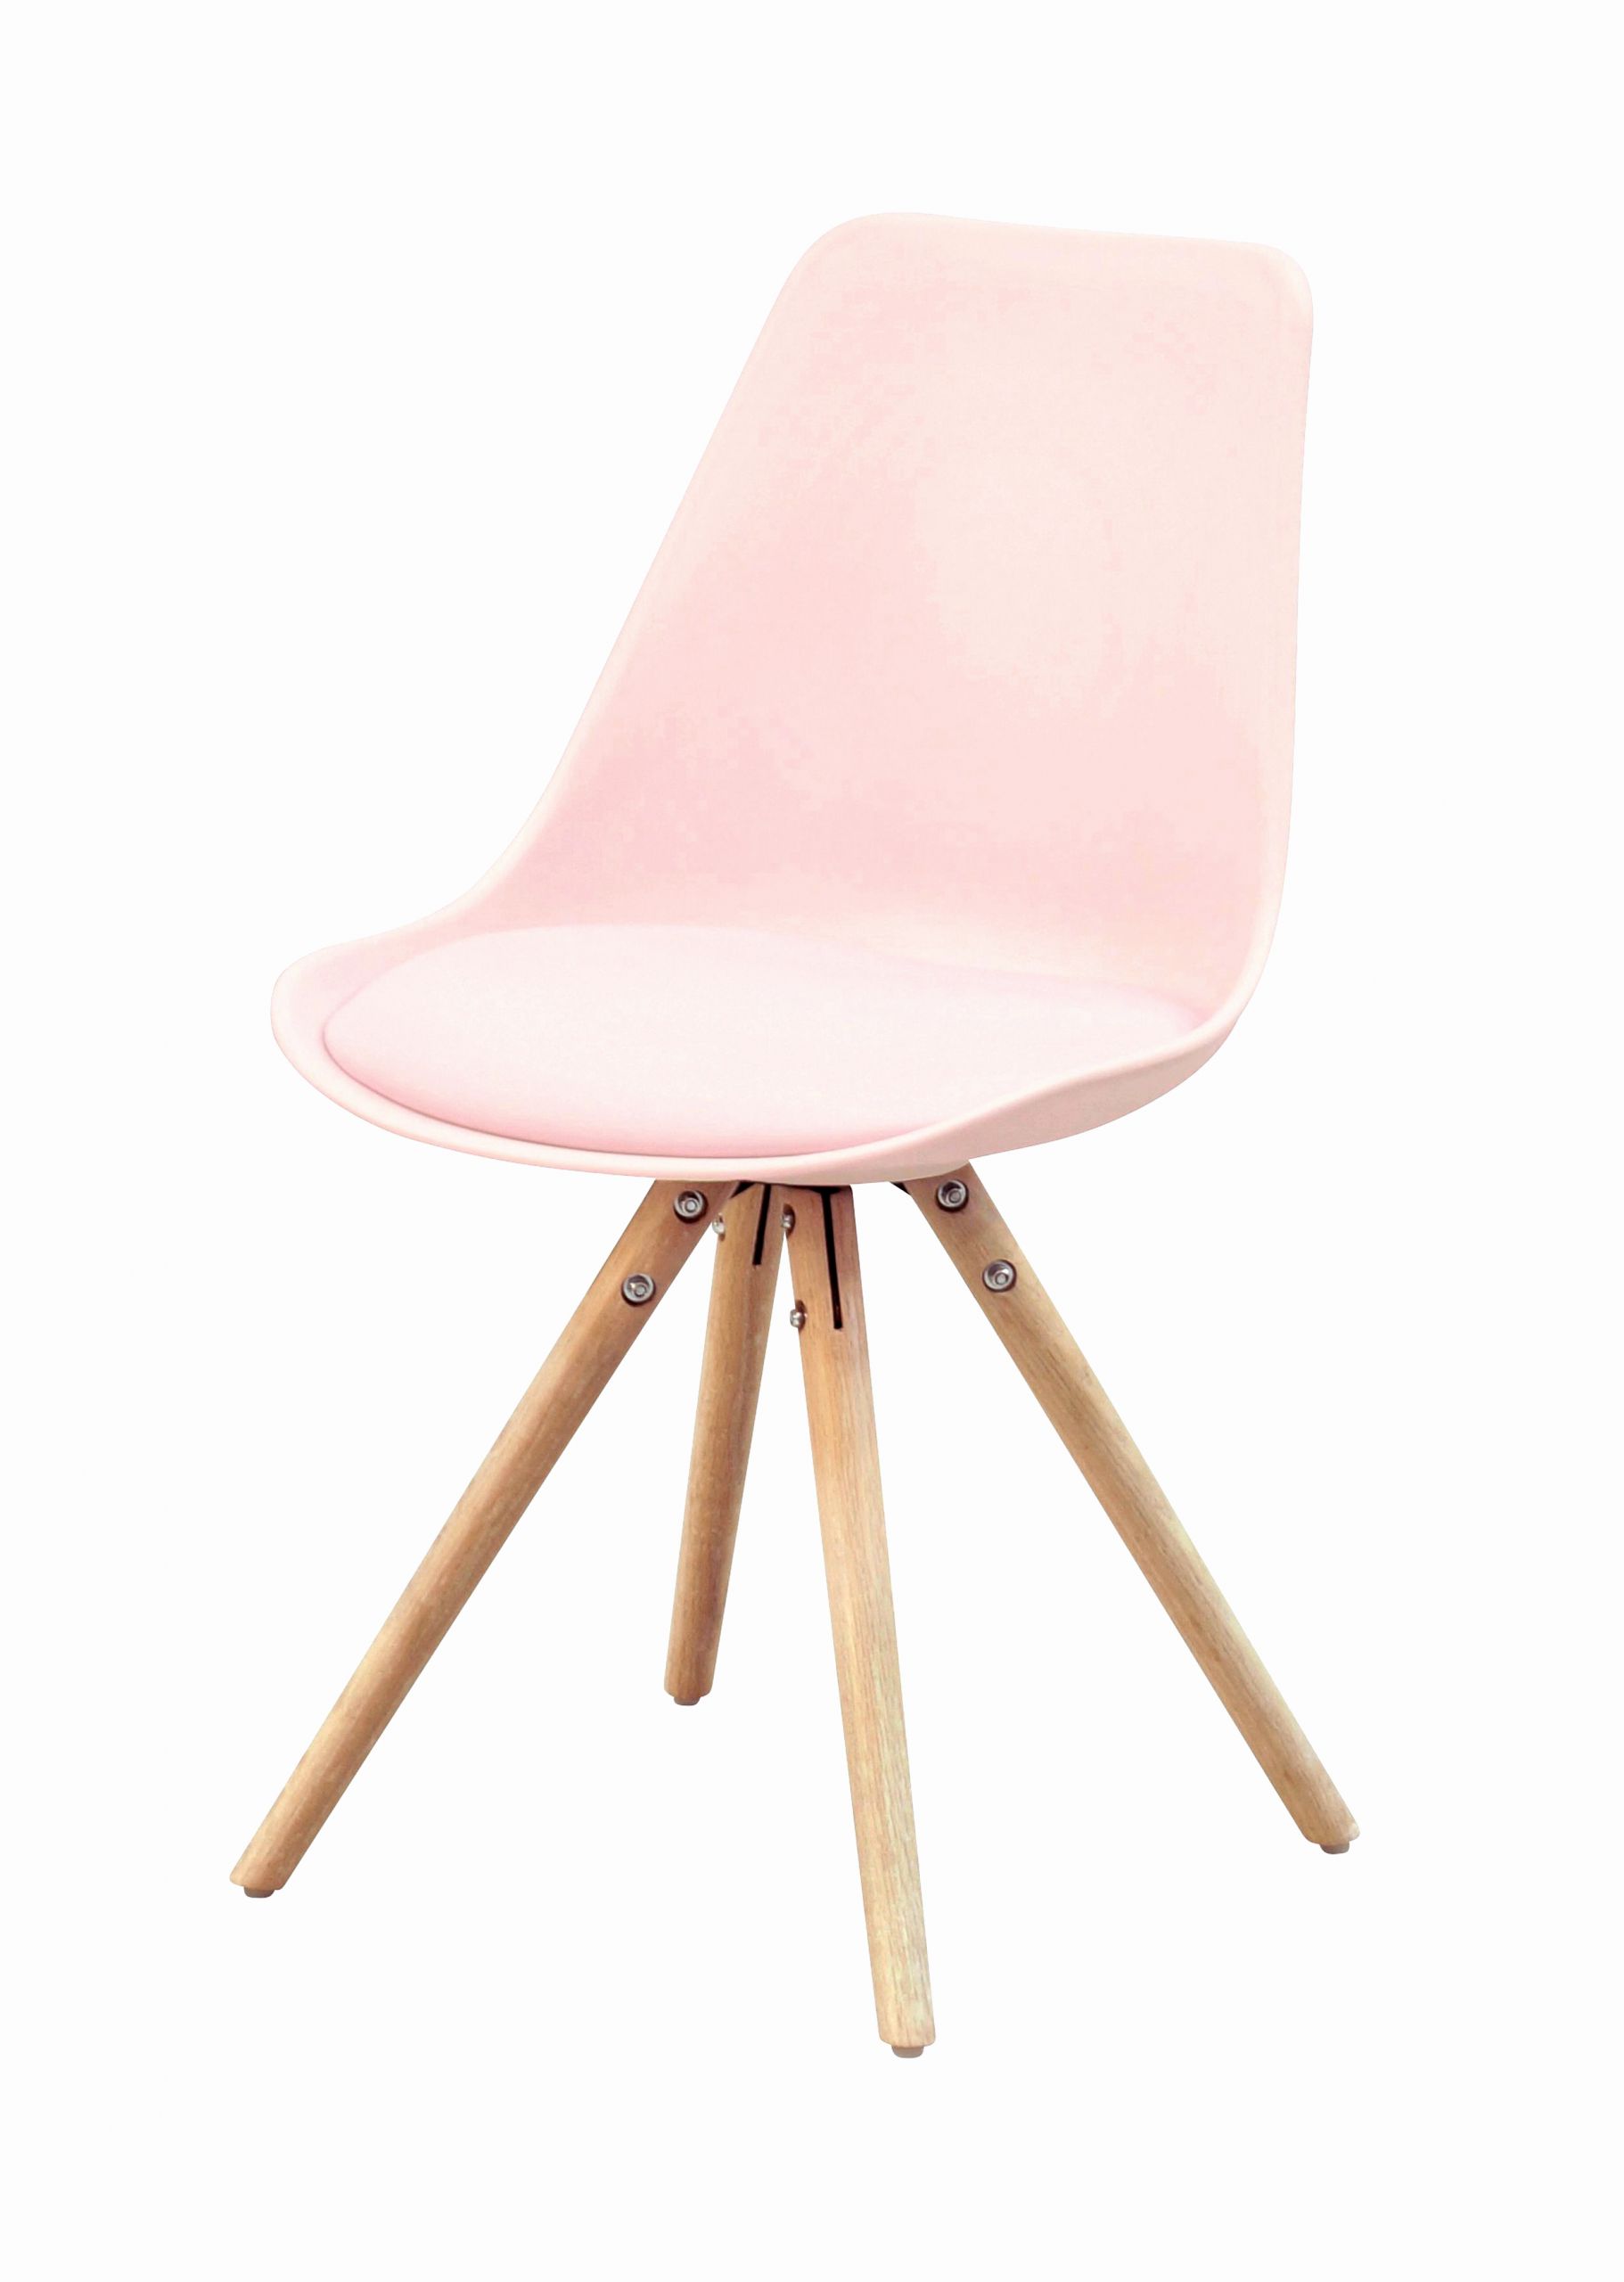 chaise blanche design pas cher elegant unique meubles scandinaves pas cher luxe chaise blanche 0d of chaise blanche design pas cher